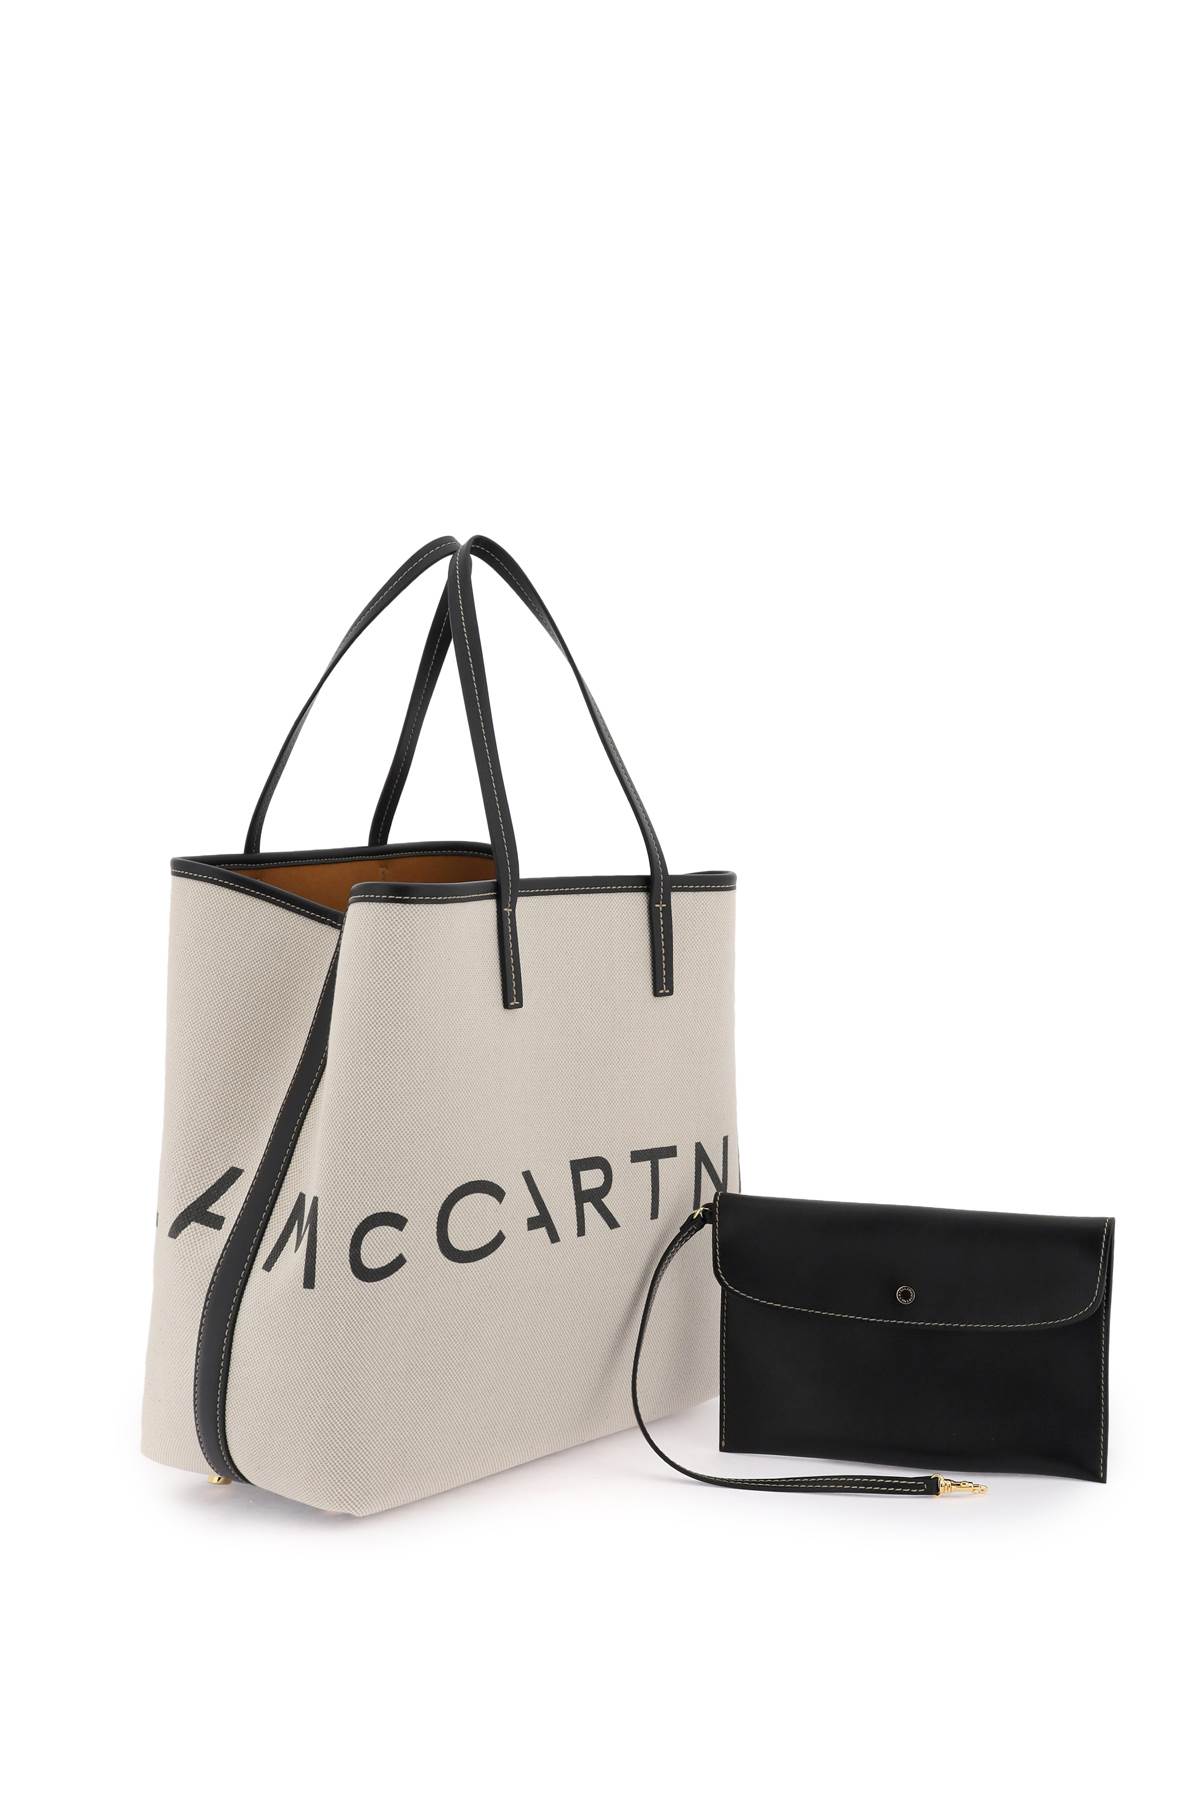 Shop Stella Mccartney Organic Cotton Canvas Tote Bag In Ecru